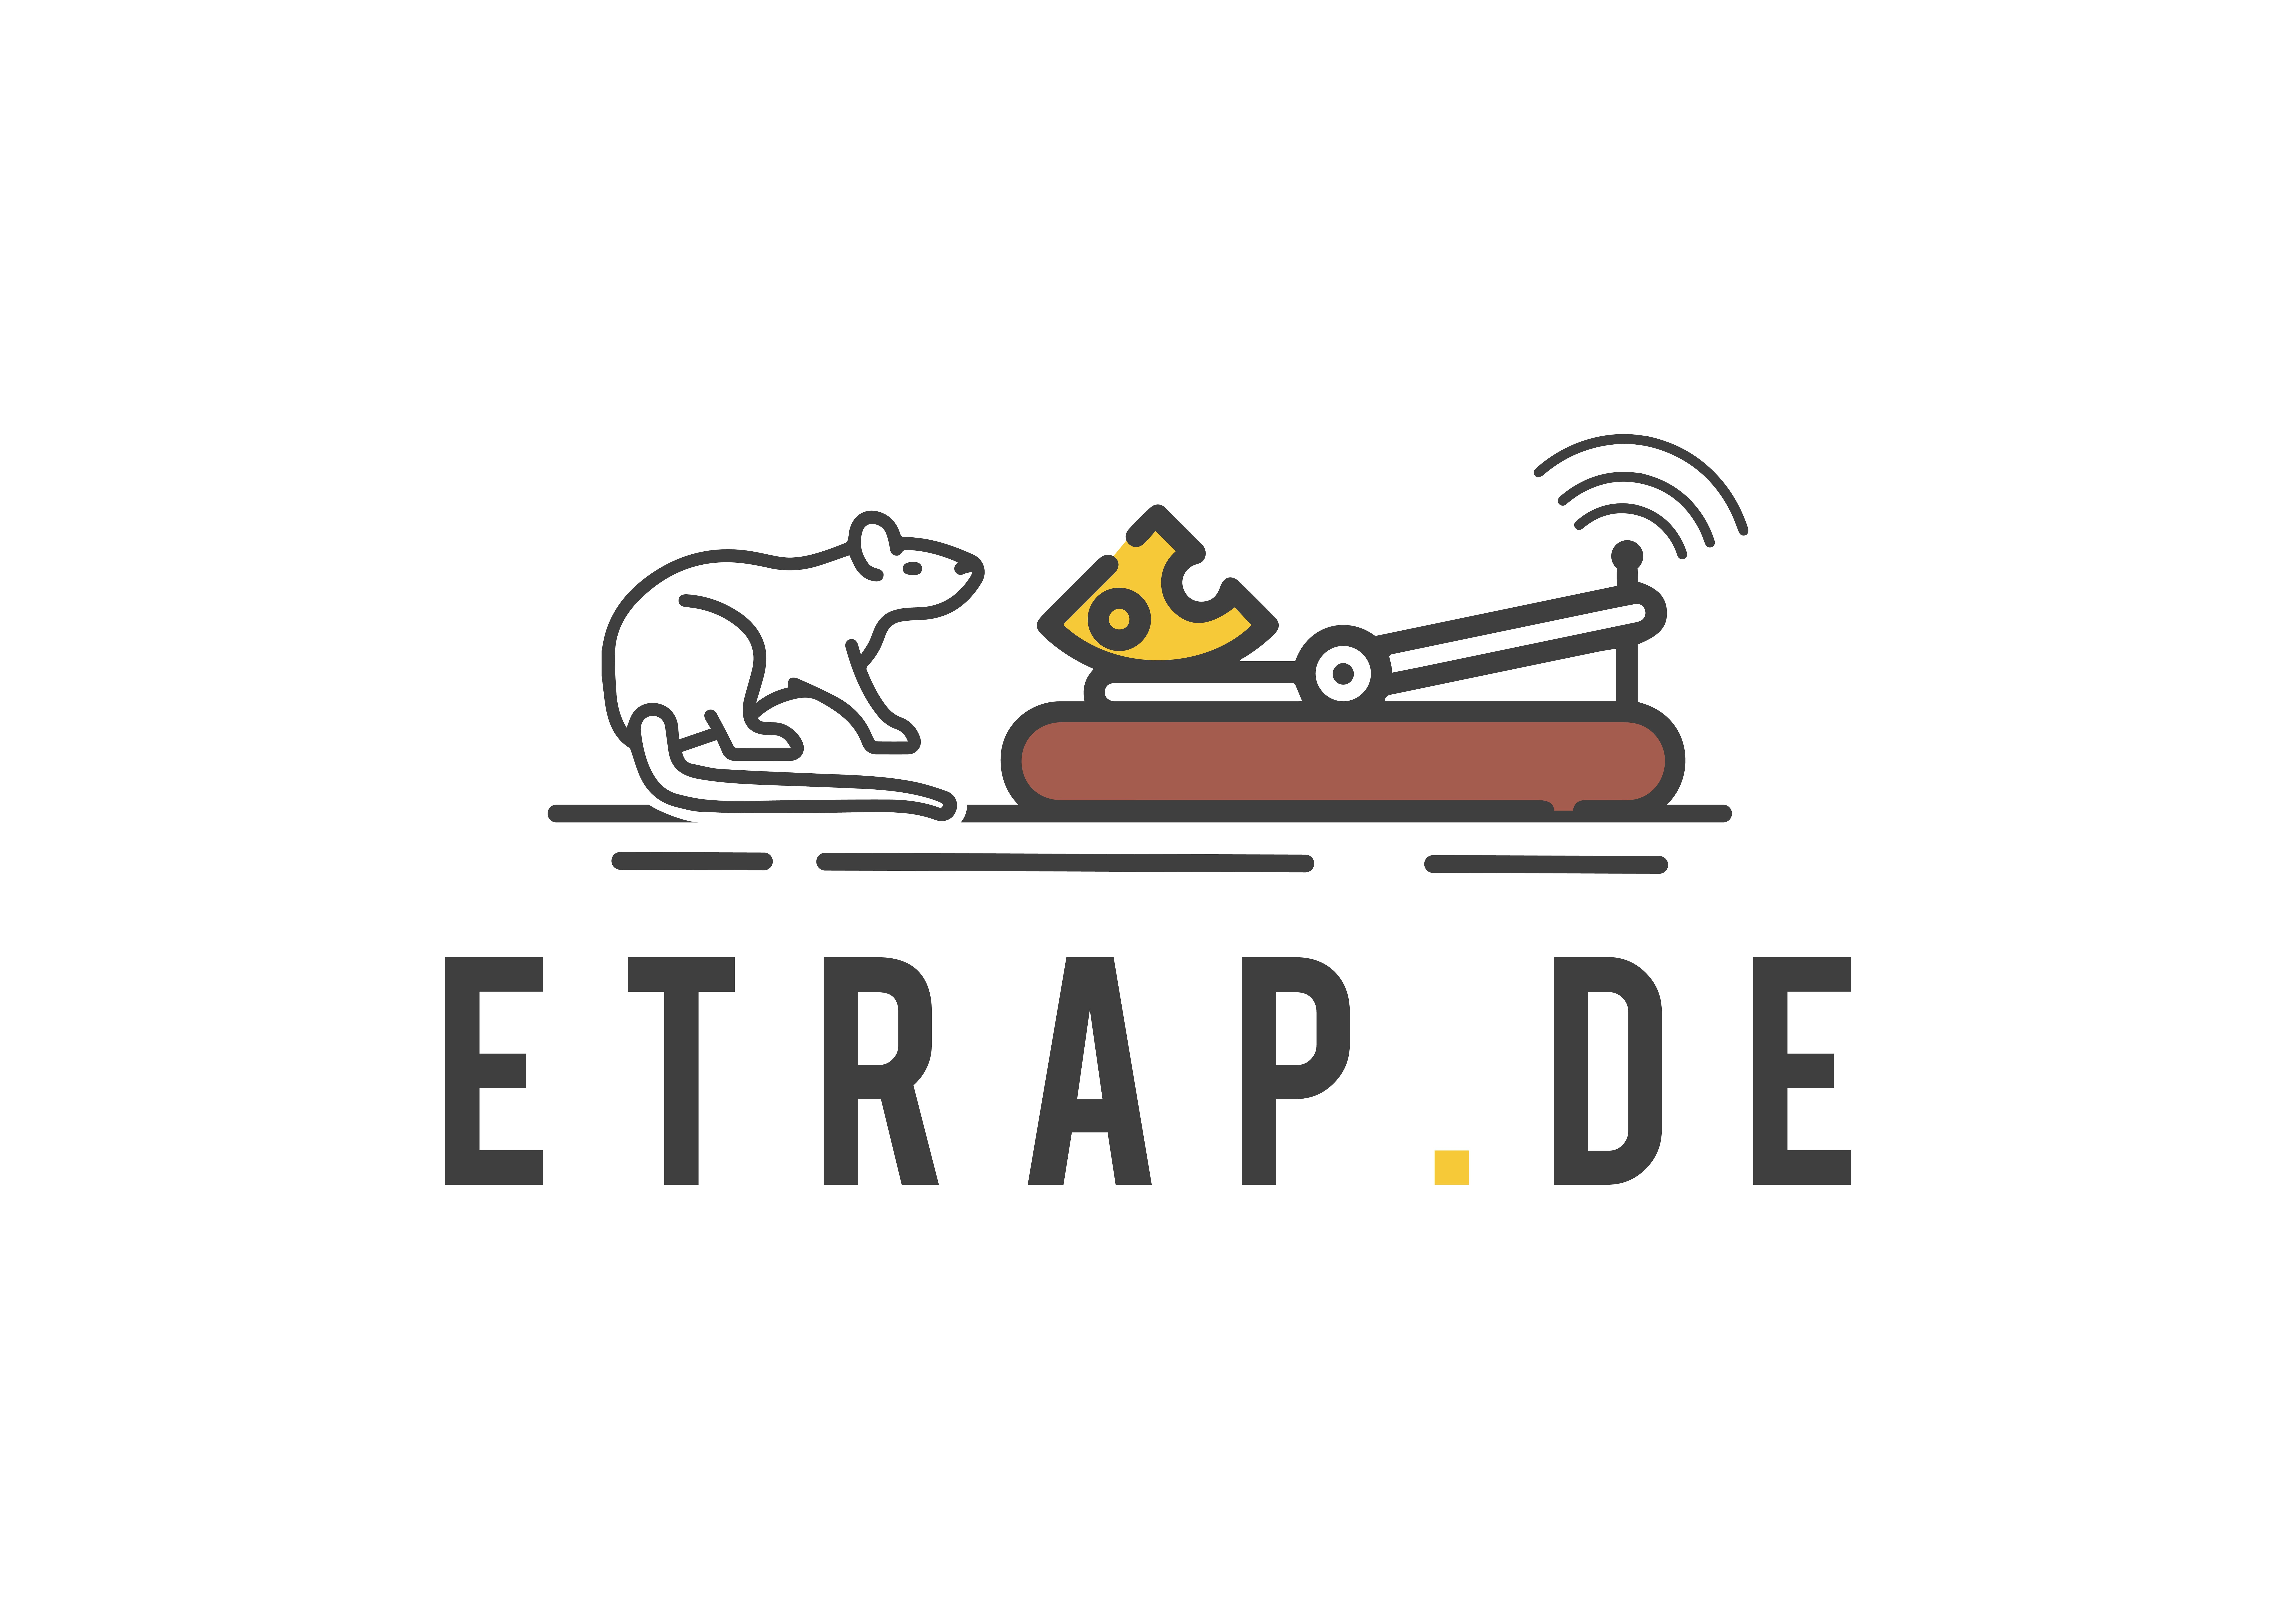 www.etrap.de